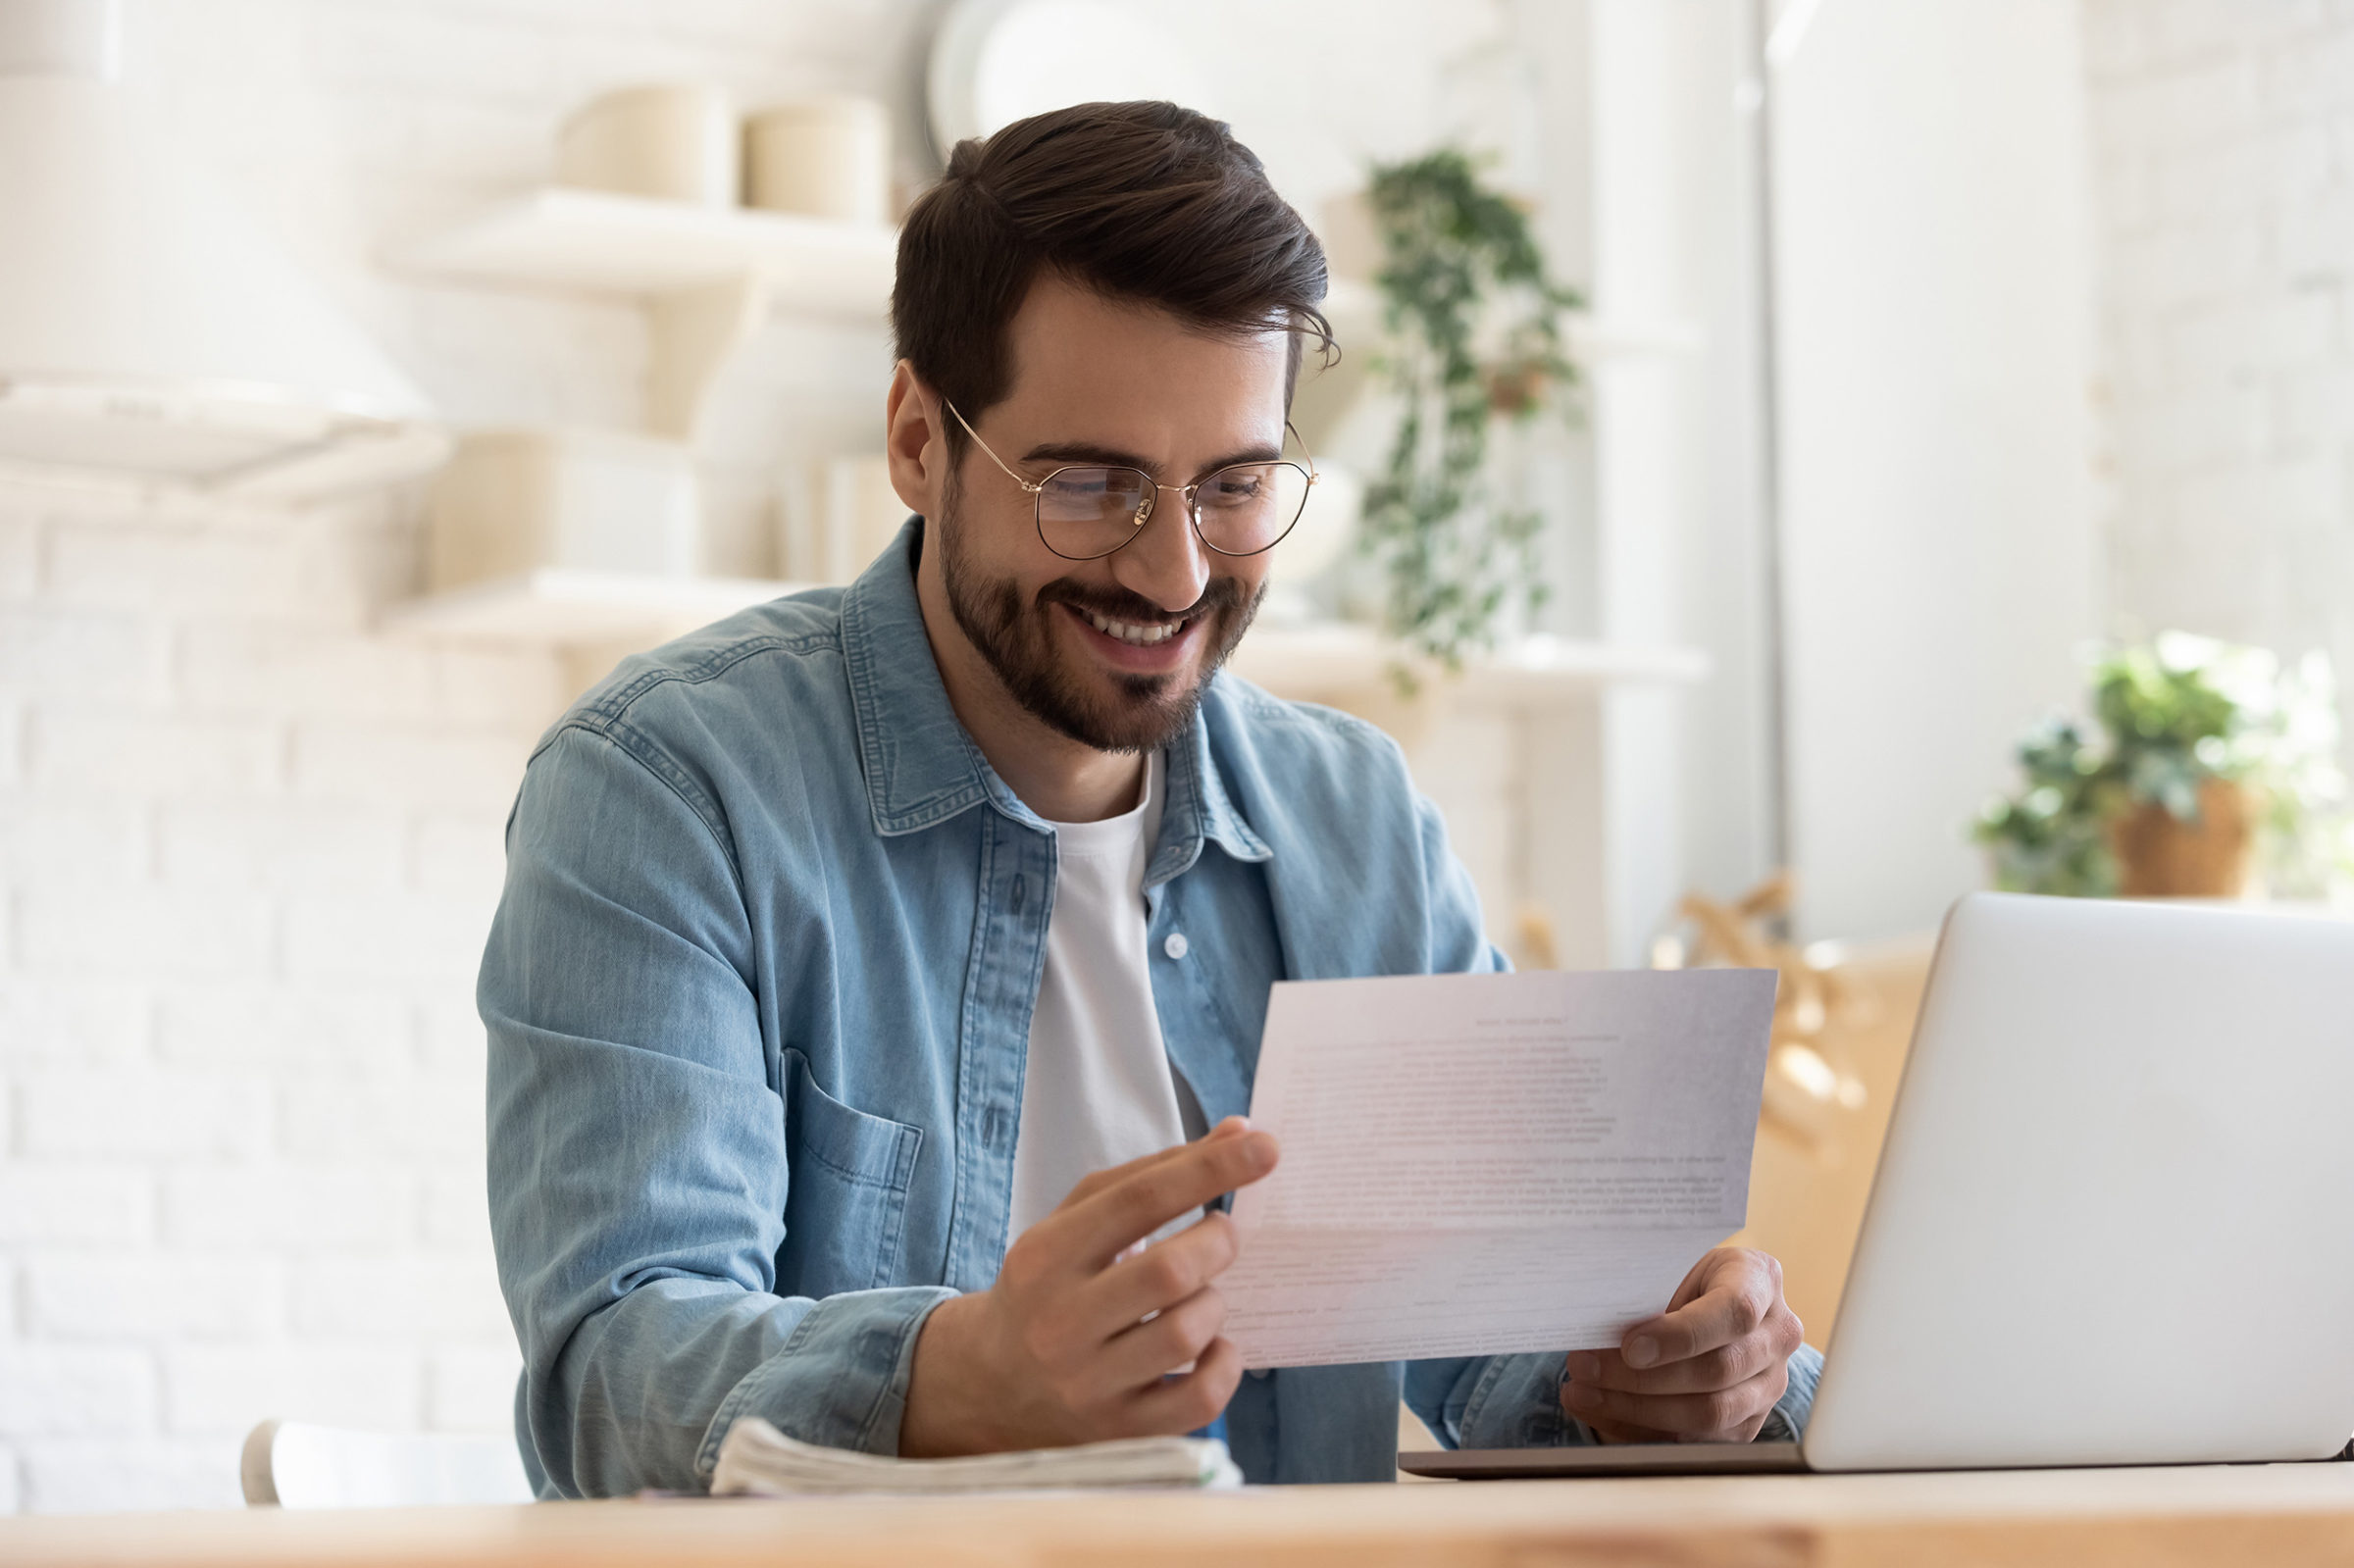 Nebenkostenabrechnung: Mann mit blauem Jeanshemd und weißem Shirt sitzt an einem Holztisch vor einem Laptop und haelt ein Dokument in den Haenden. Er laechelt dabei.